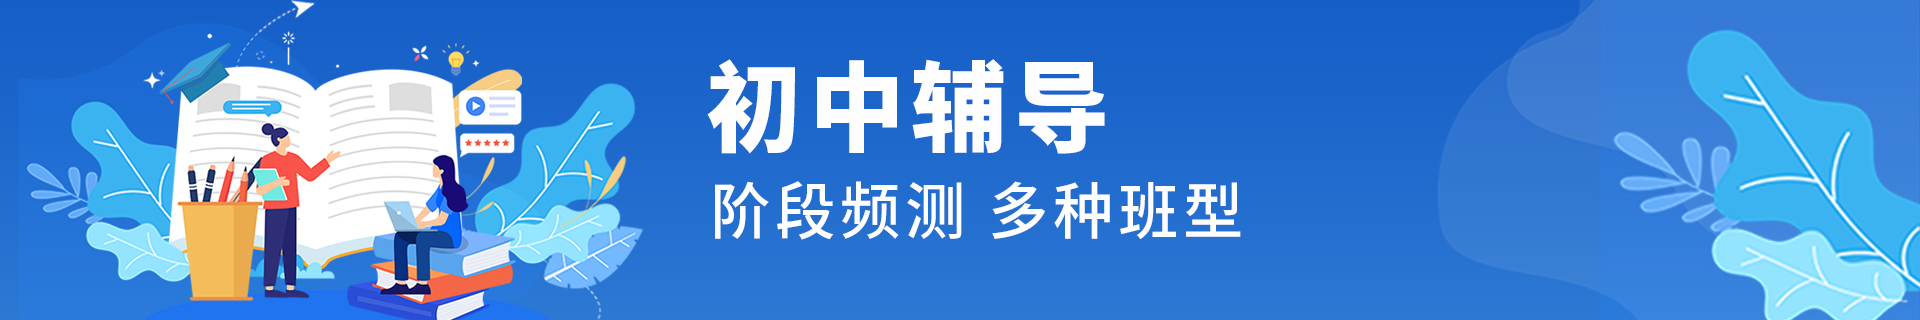 郑州金水区励学个性化教育机构